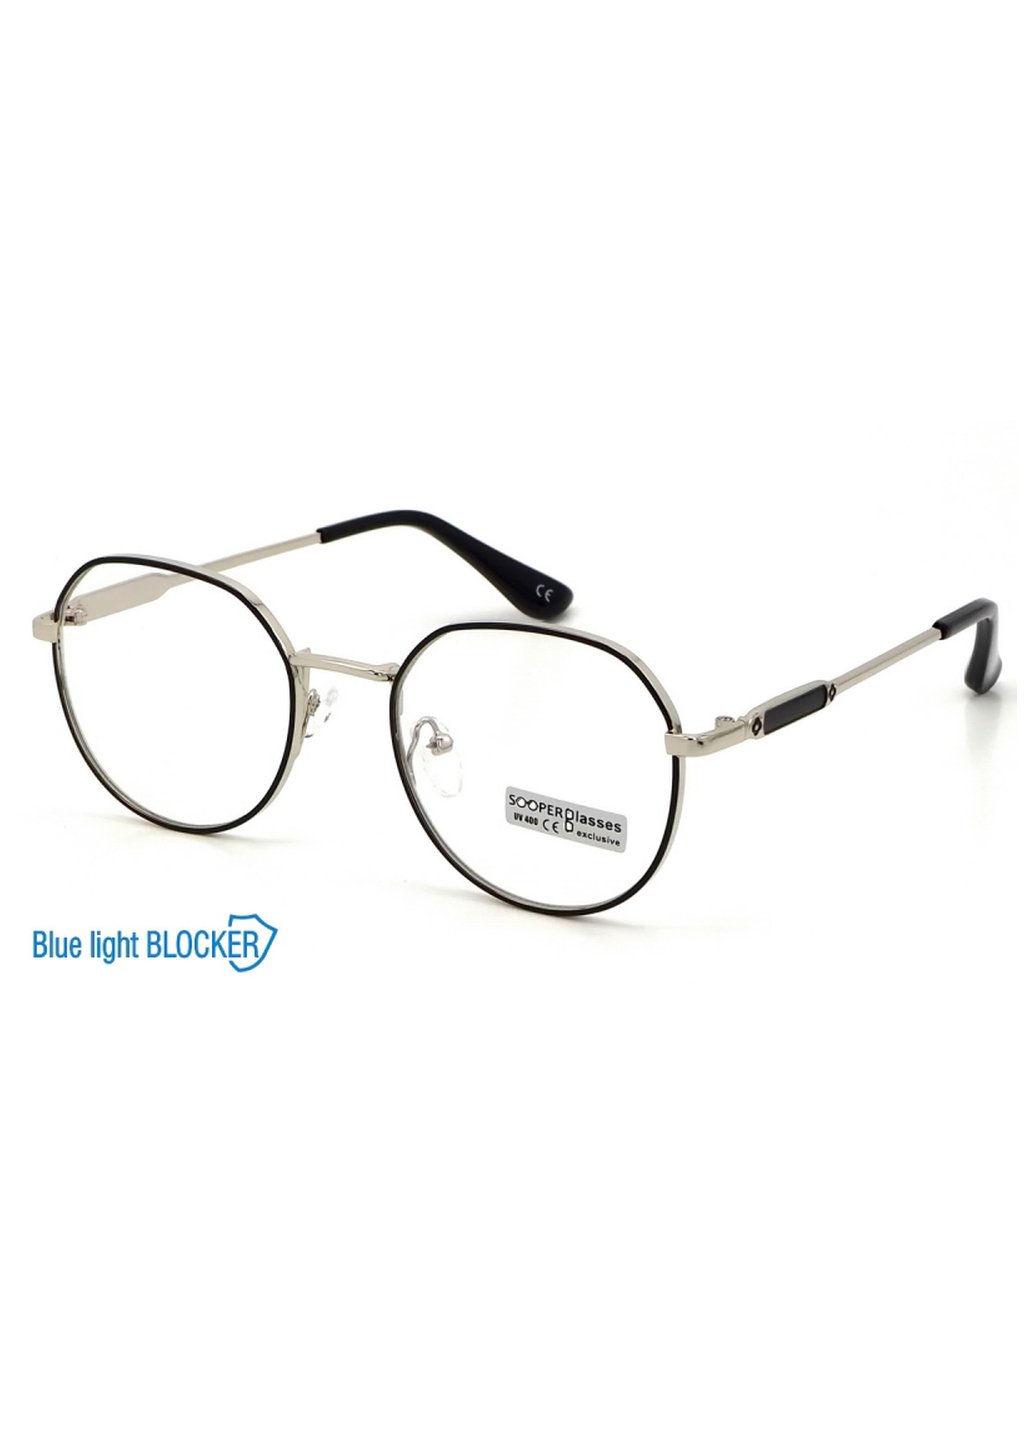 Купить Очки для работы за компьютером Cooper Glasses в серебристой оправе 124008 в интернет-магазине